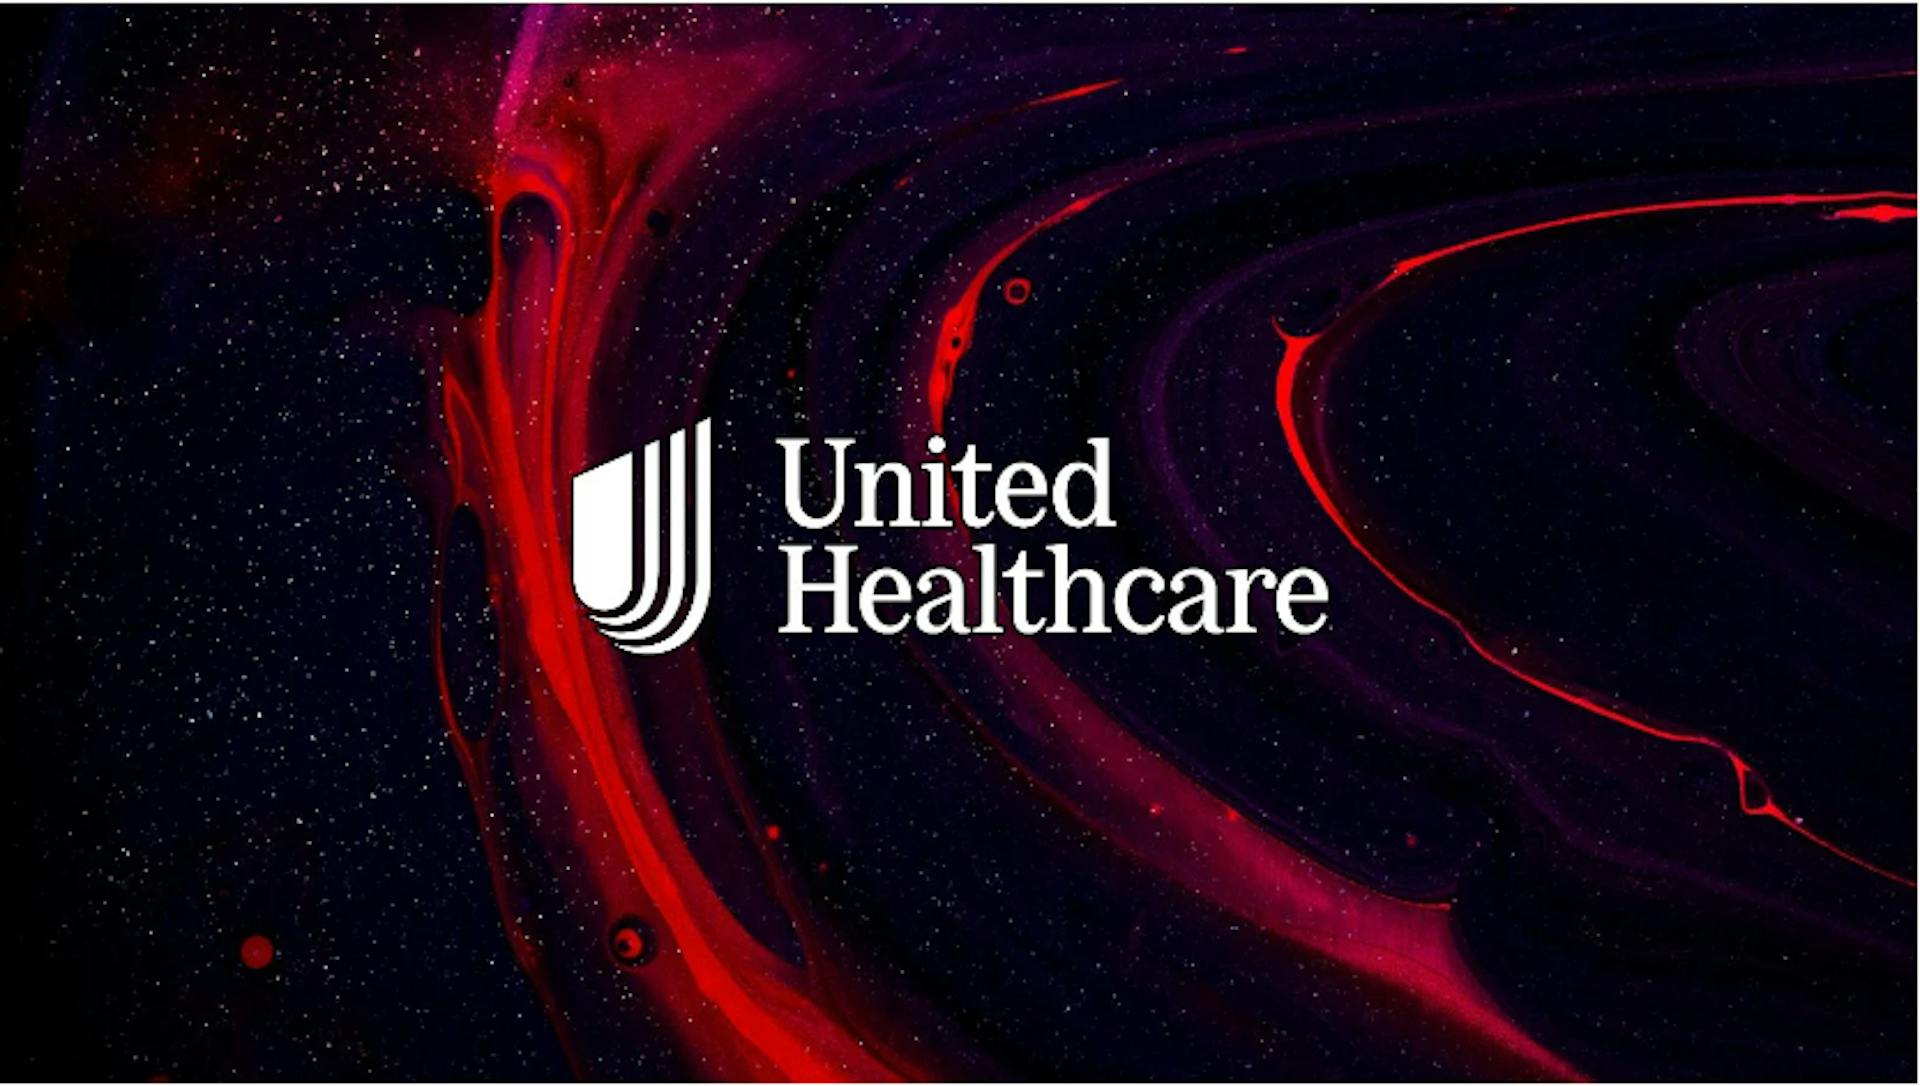 United Healthcare breach 